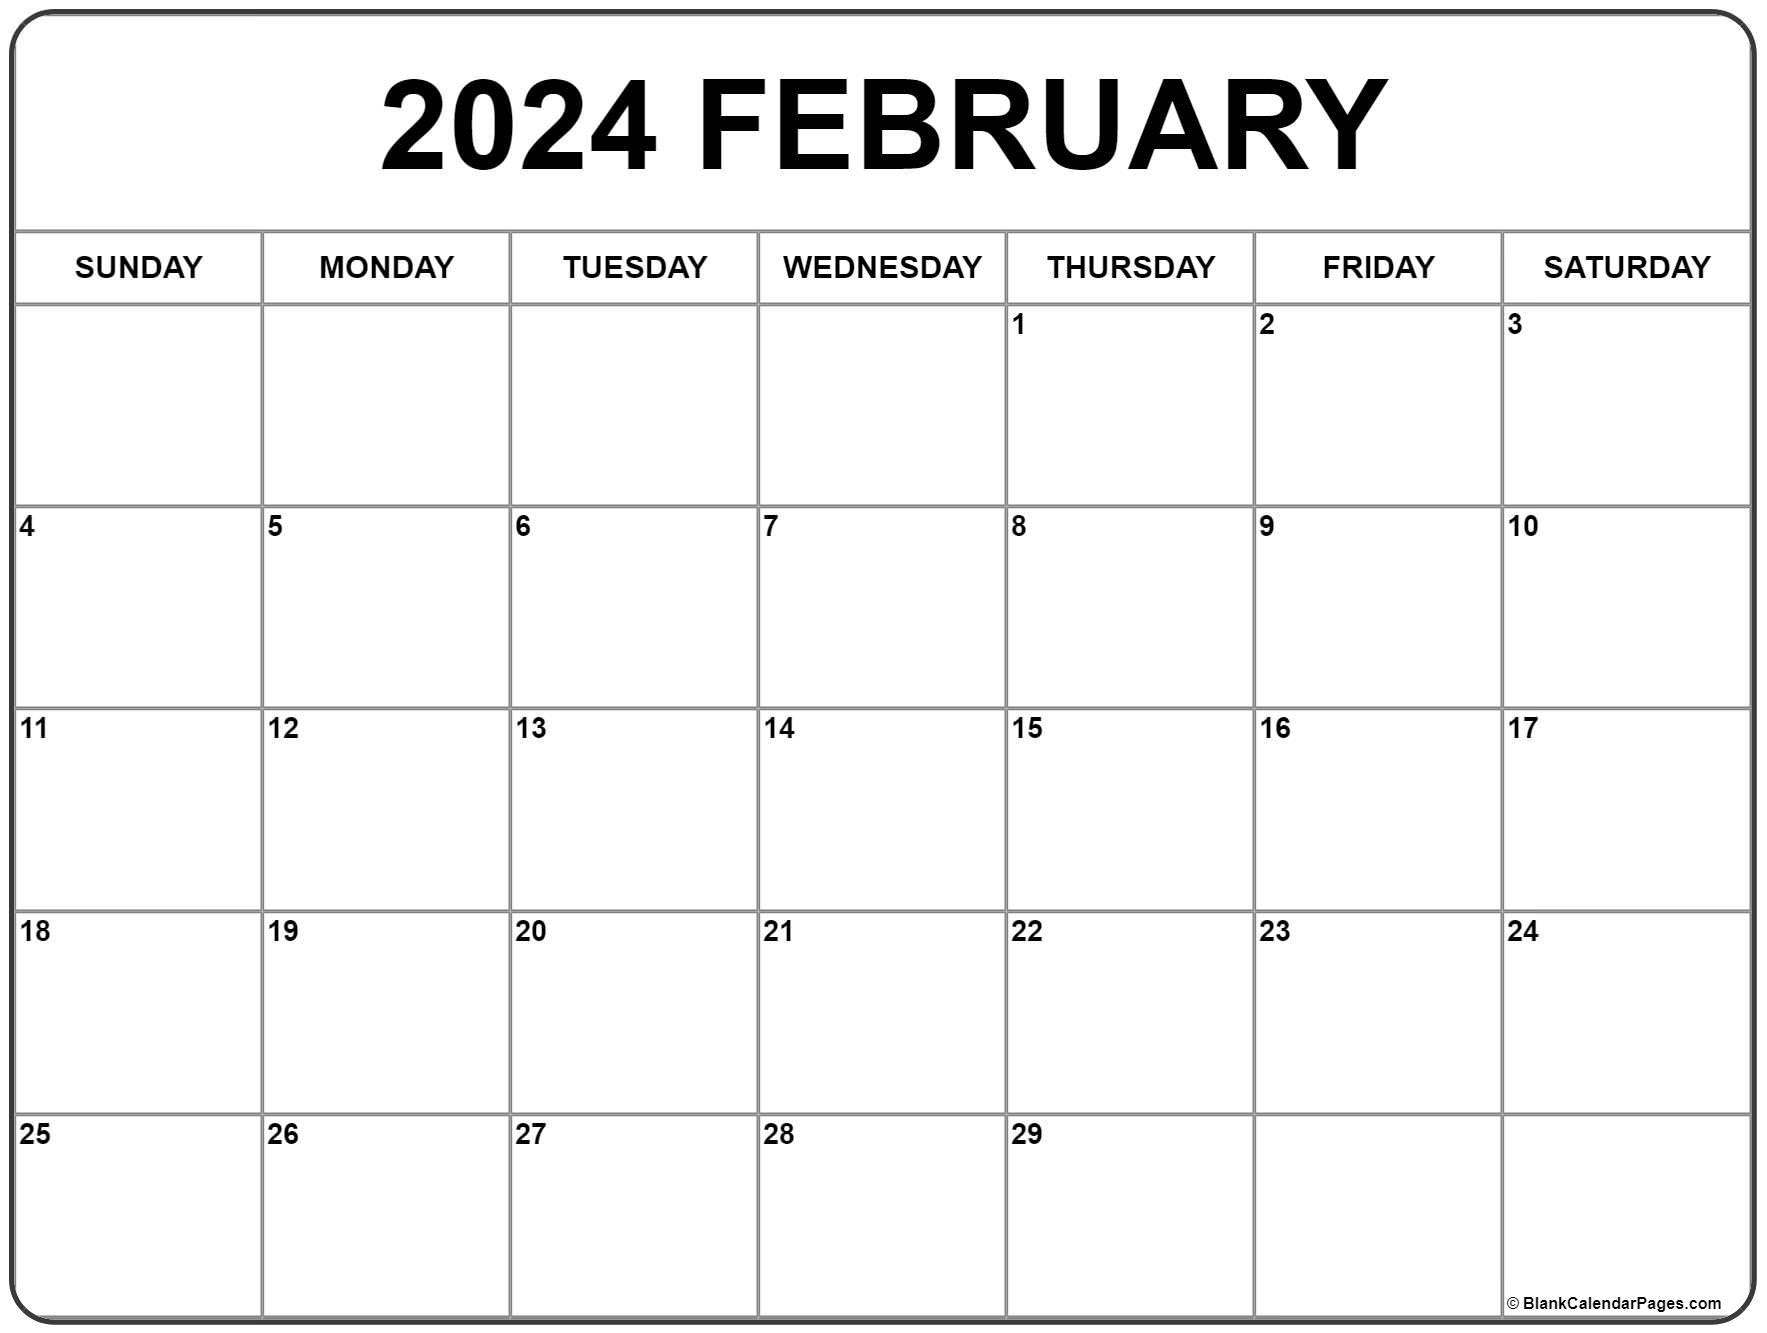 February, 2023